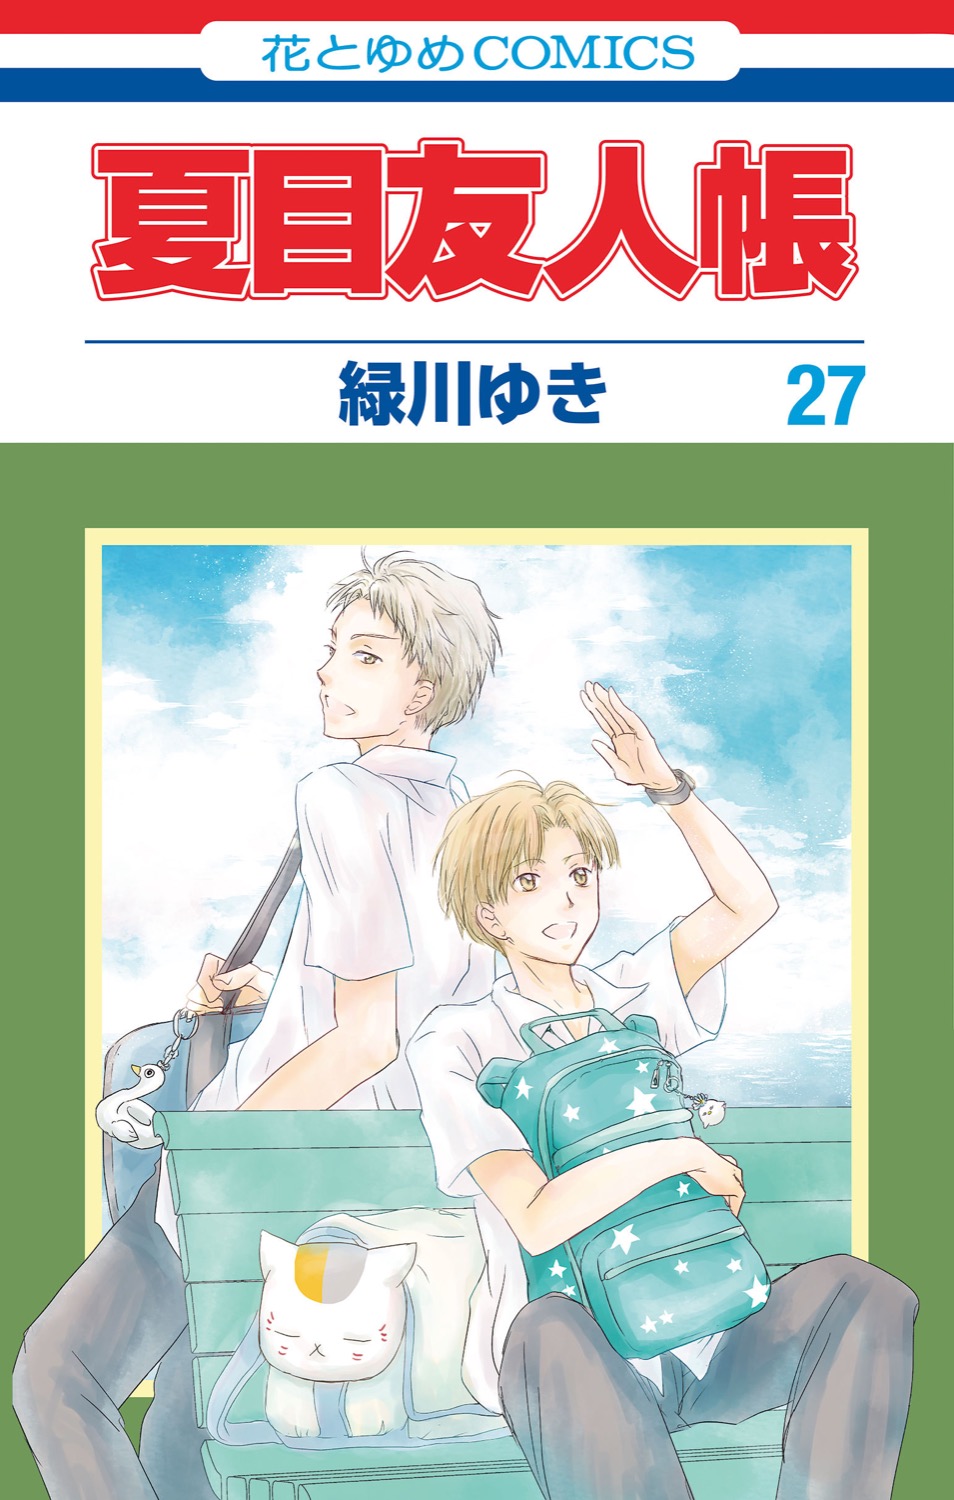 夏目友人帳 最新刊27巻 9月3日にフィギュア付き特装版と同時発売